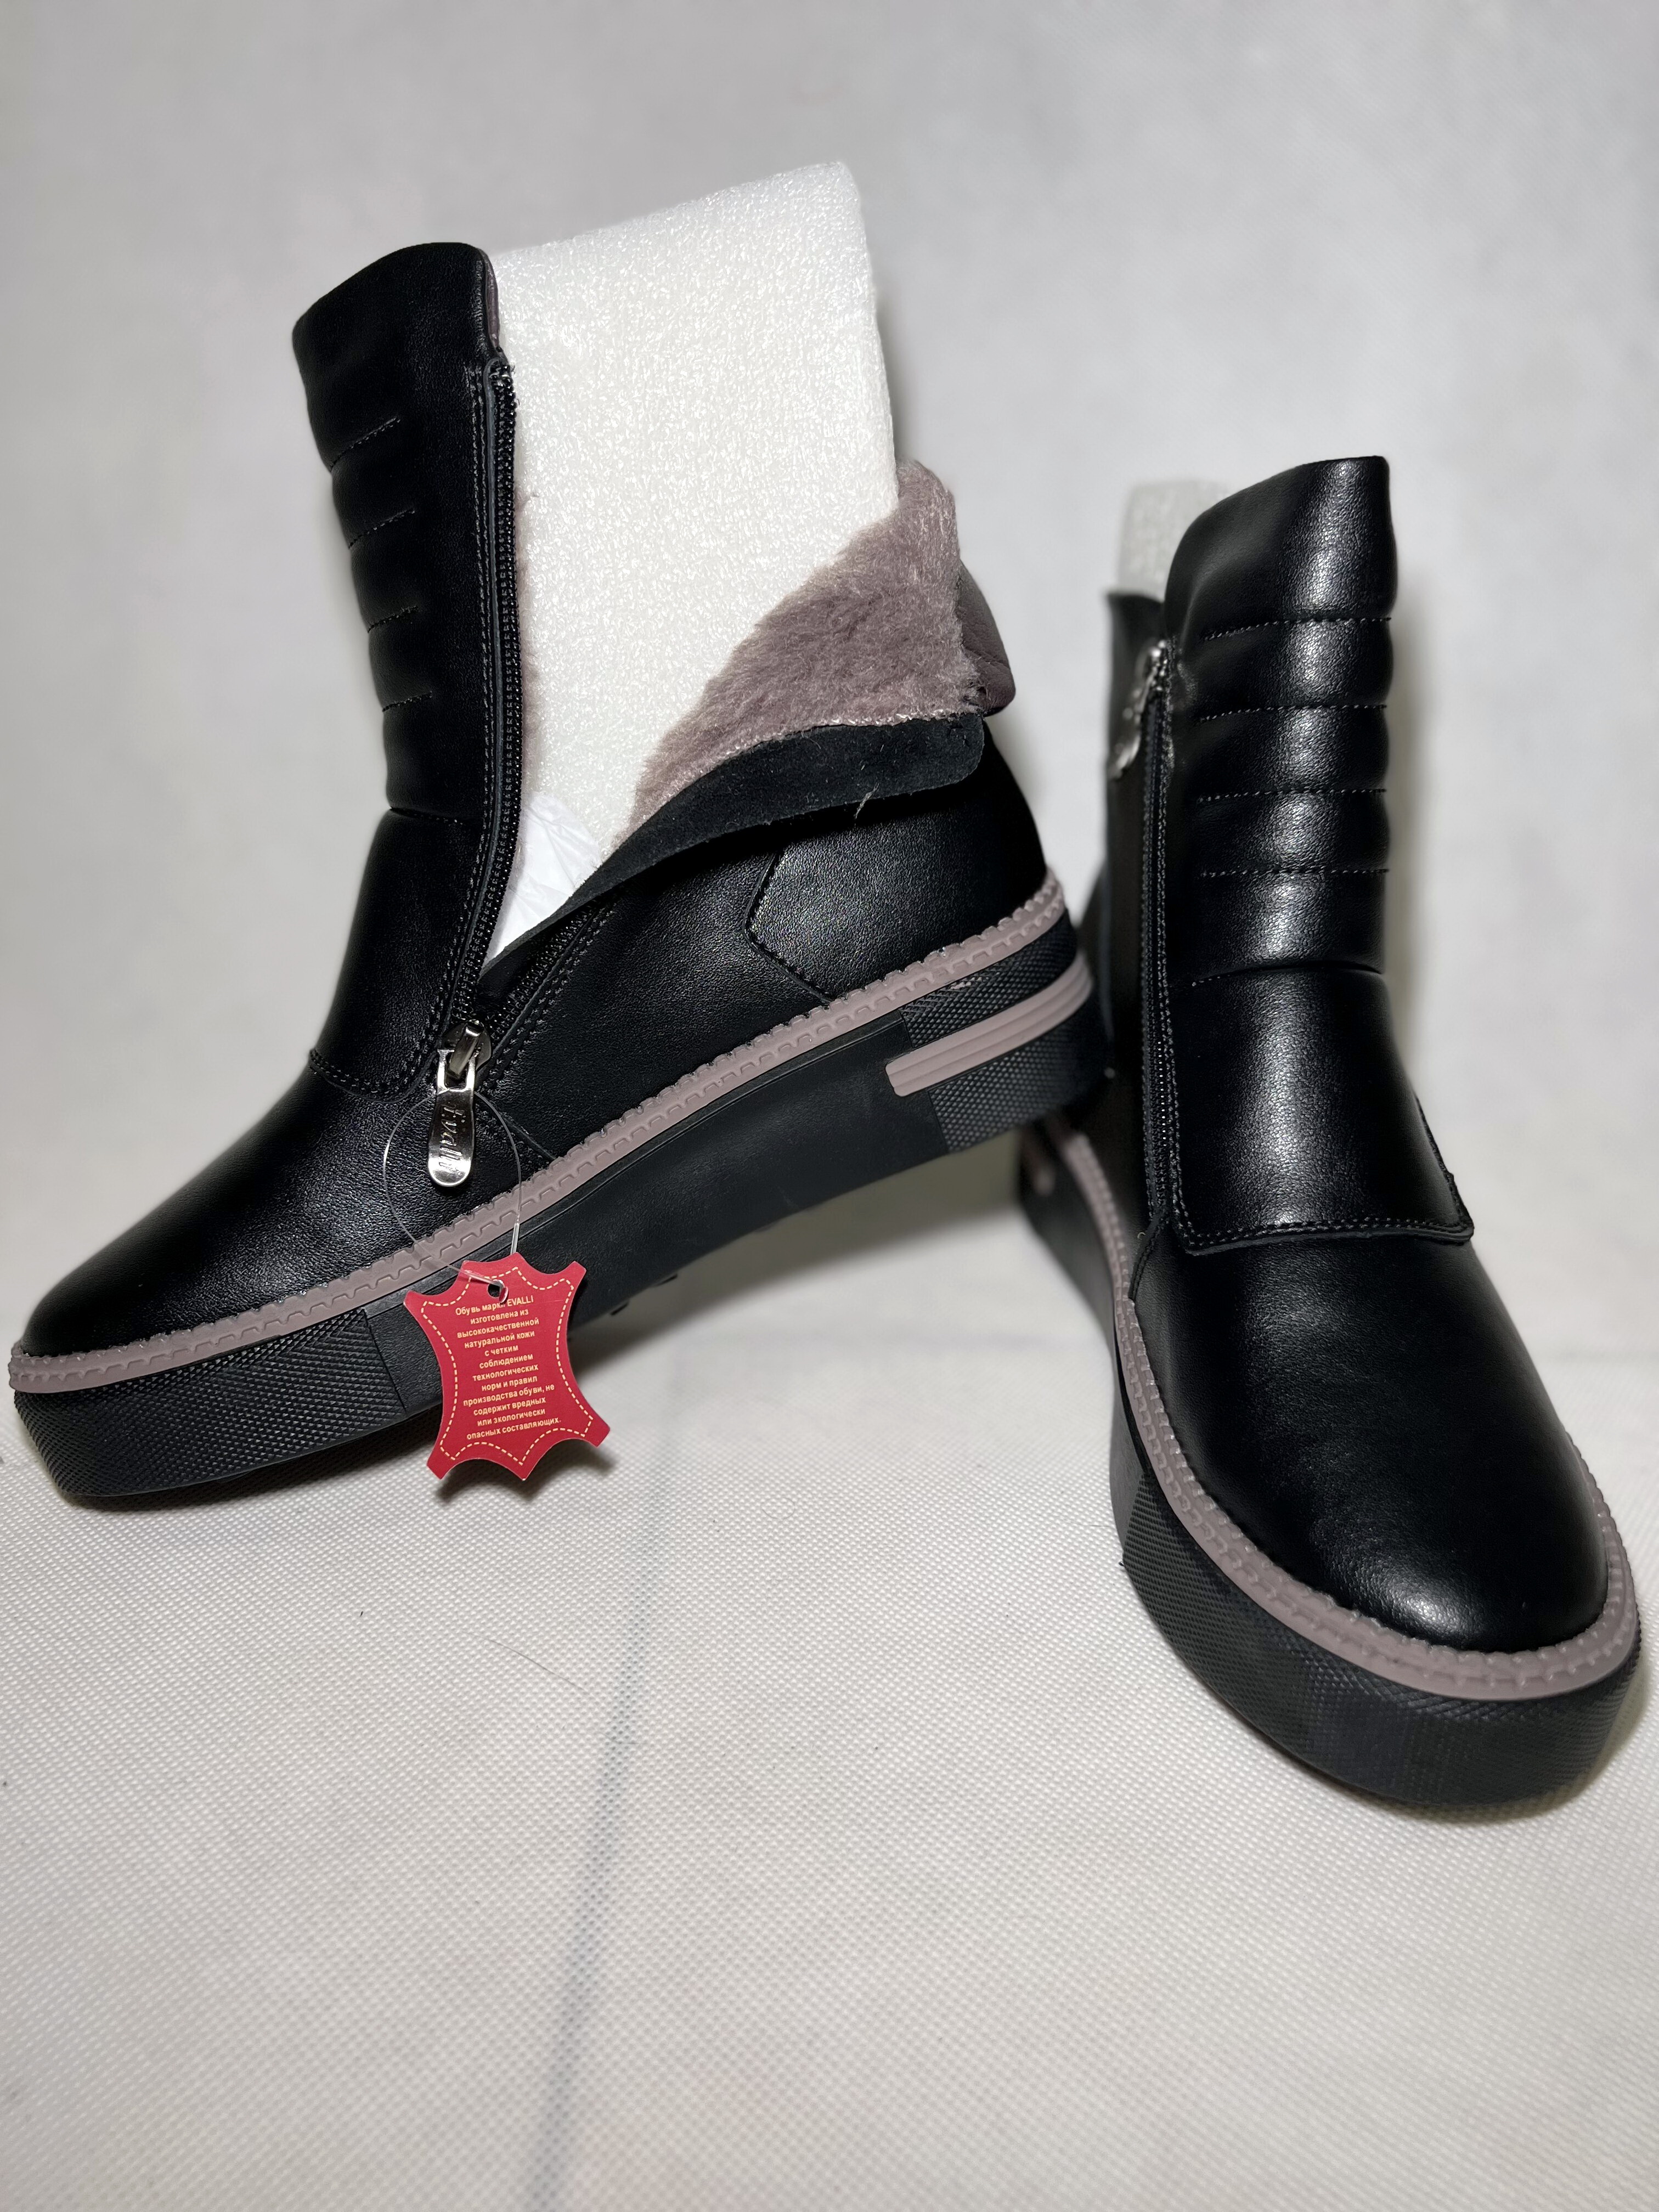 Ботинки обувь женская зимняя W3 SVS6 1 Чёрный кожа мех